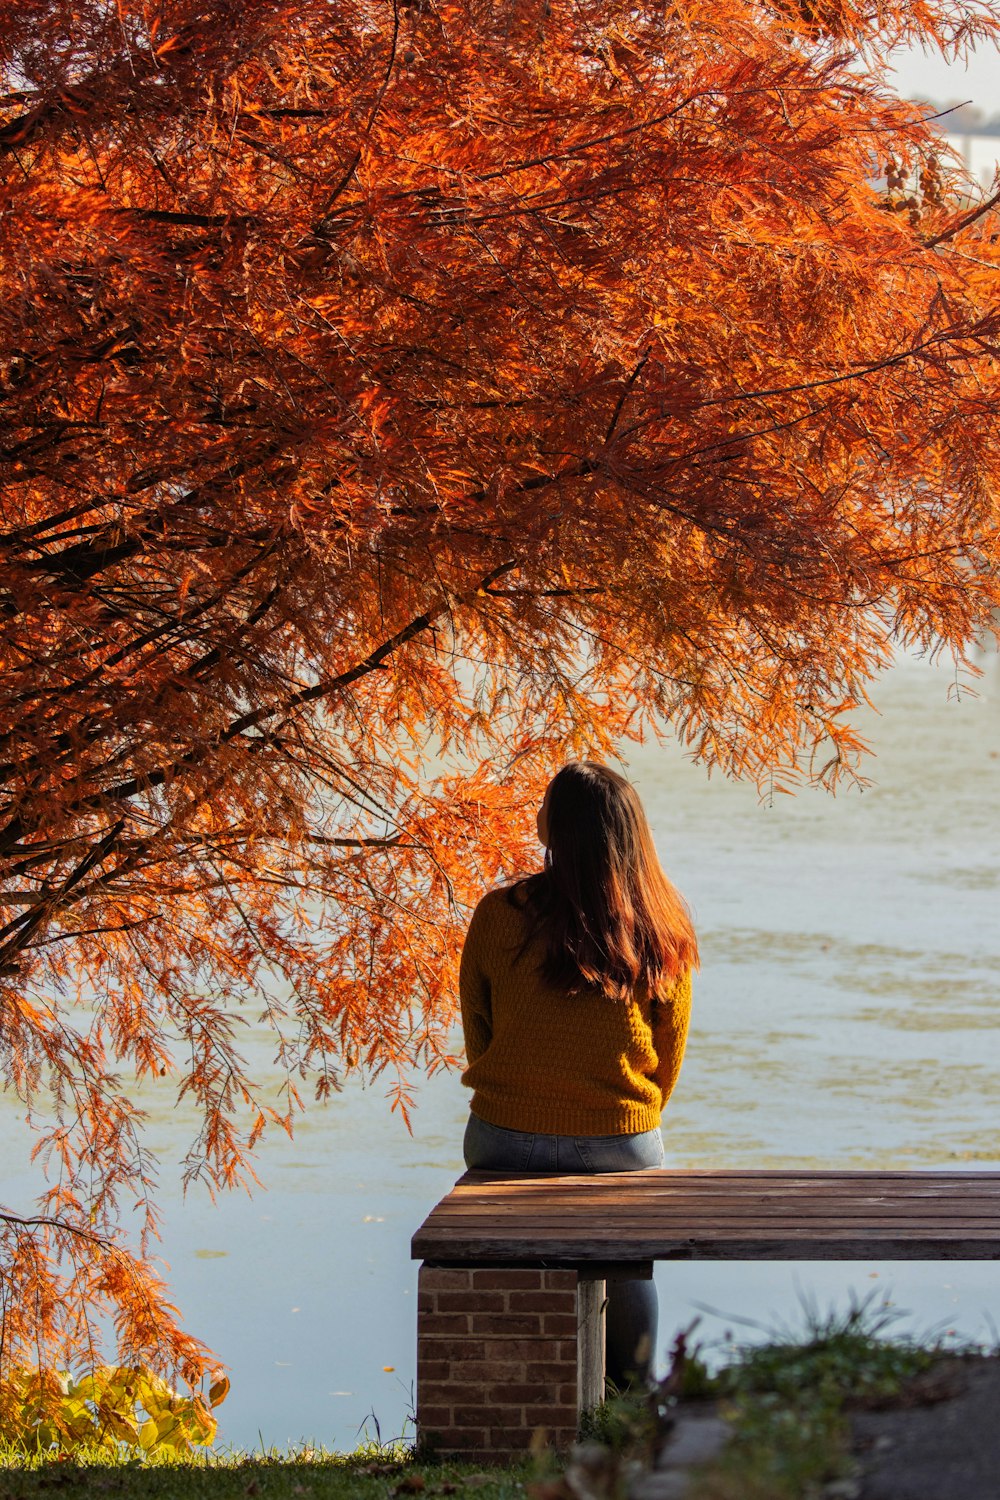 eine Person, die auf einer Bank sitzt und einen Baum mit orangefarbenen Blättern betrachtet